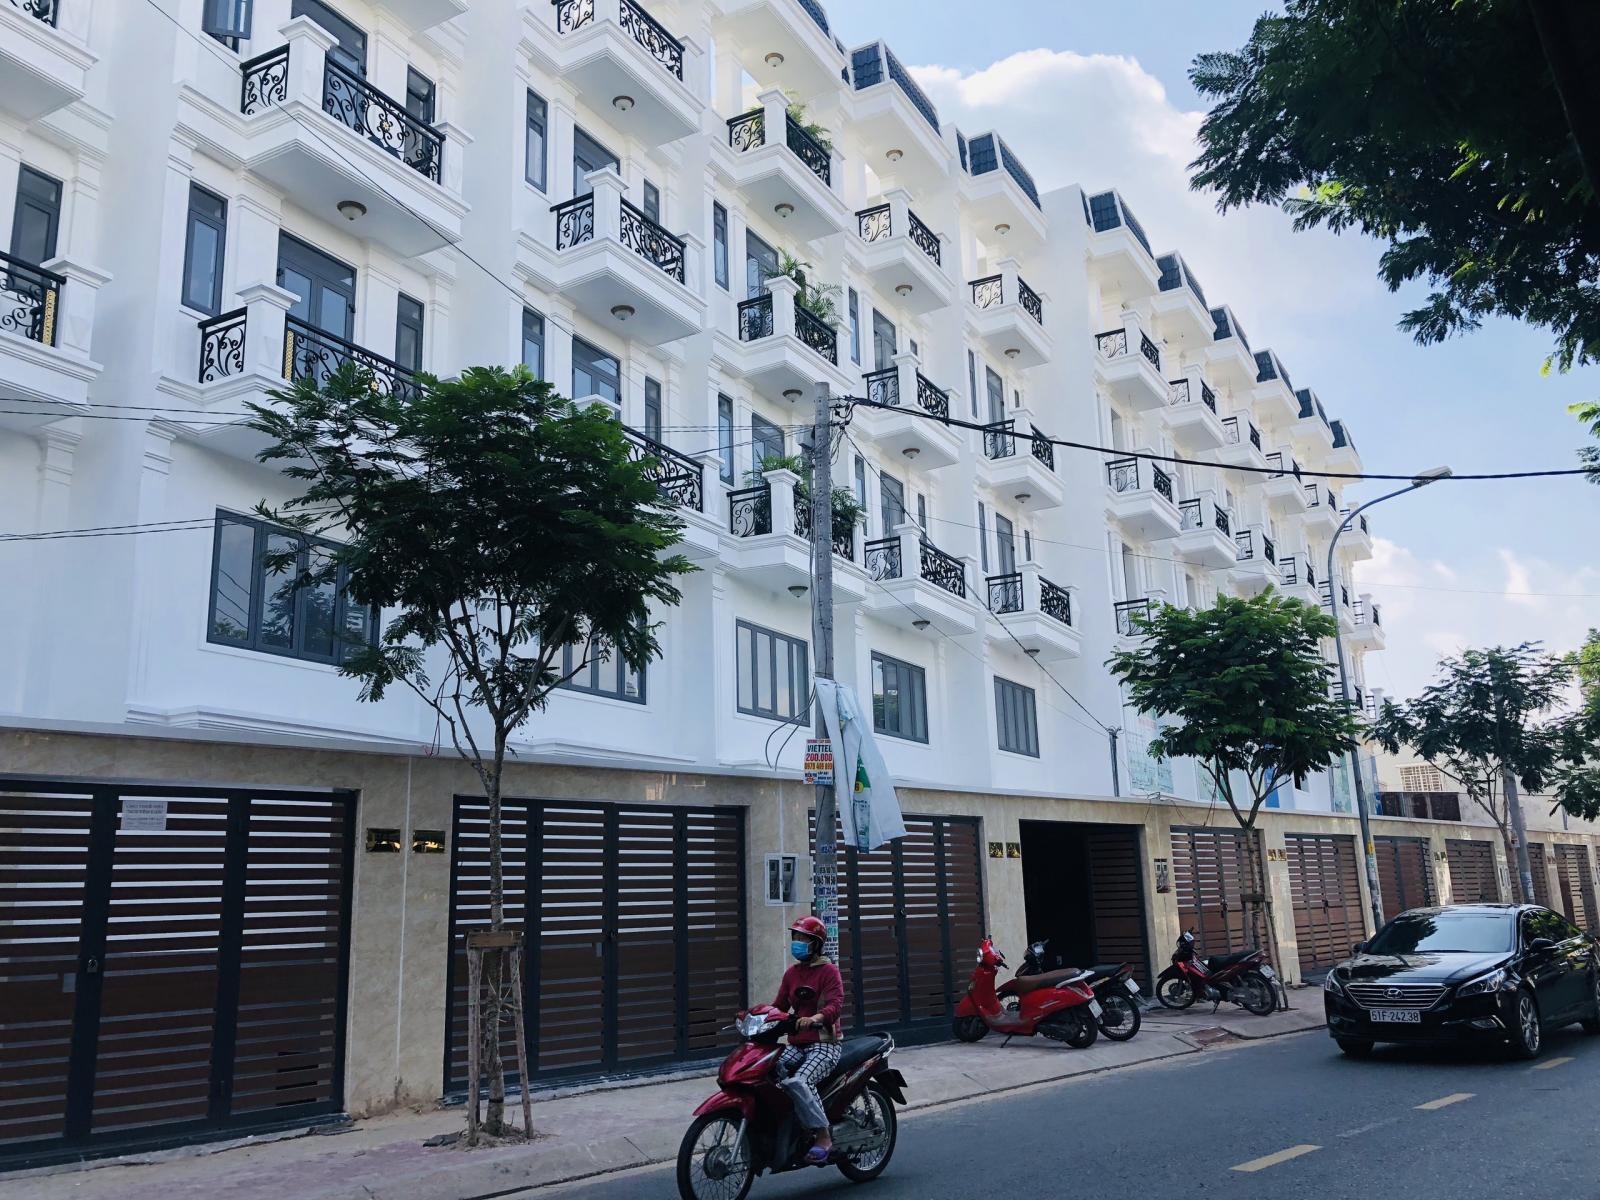 Bán nhà biệt thự liền kề ở Sài Gòn ngay trung tâm Q12, HCM. Gía 3 tỉ 700tr. Liên hệ: 0907.22.88.29